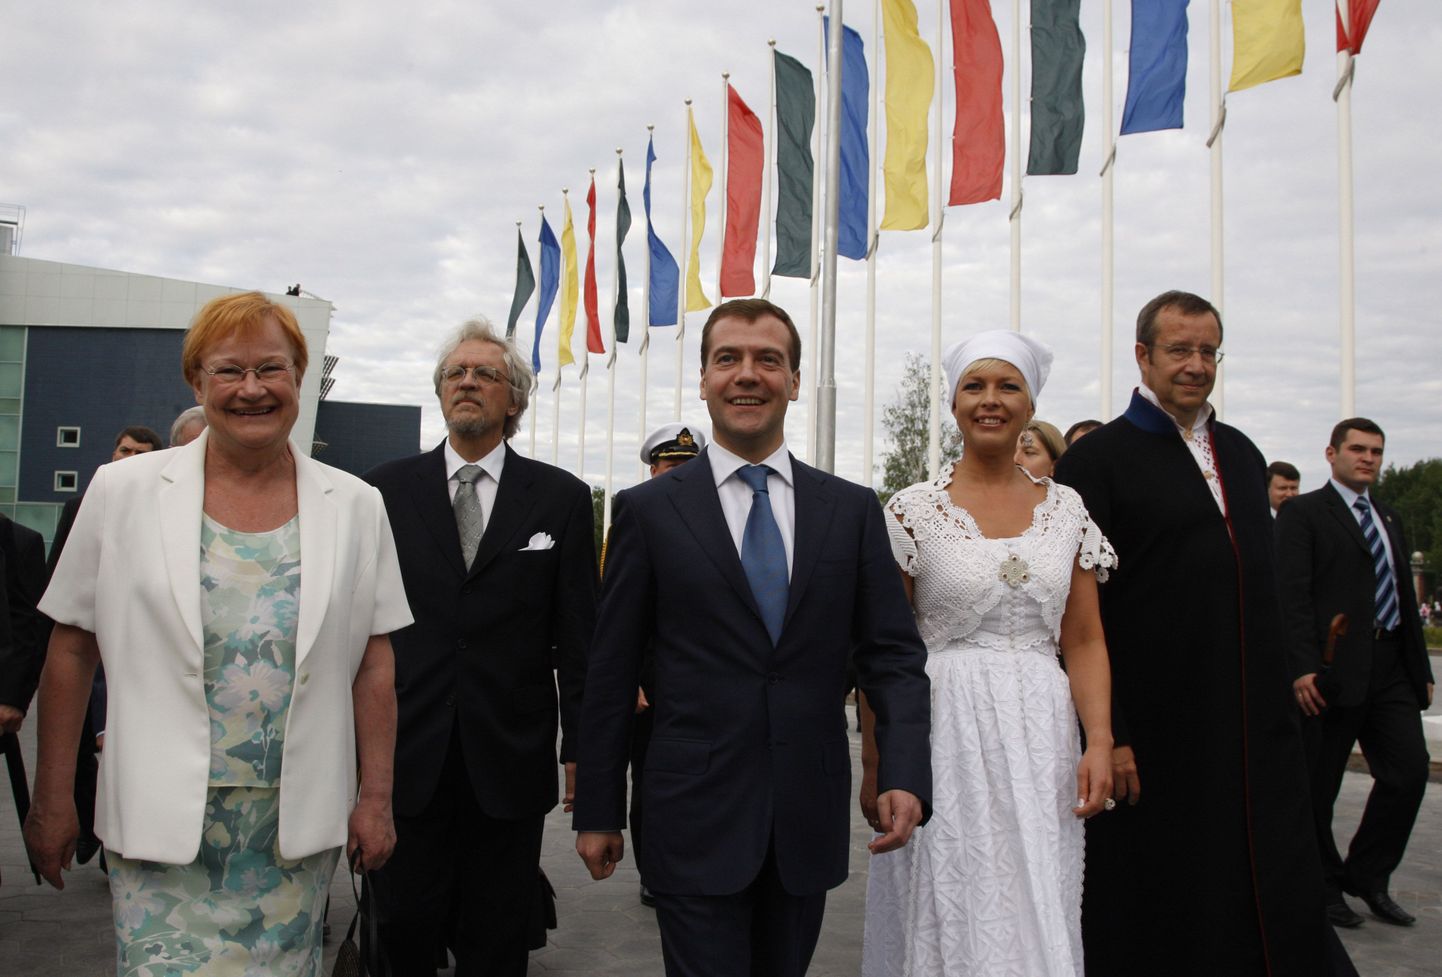 Soomeugri rahvaste 5. maailmakongressil osalenud riigipead 2008. aastal Venemaal.